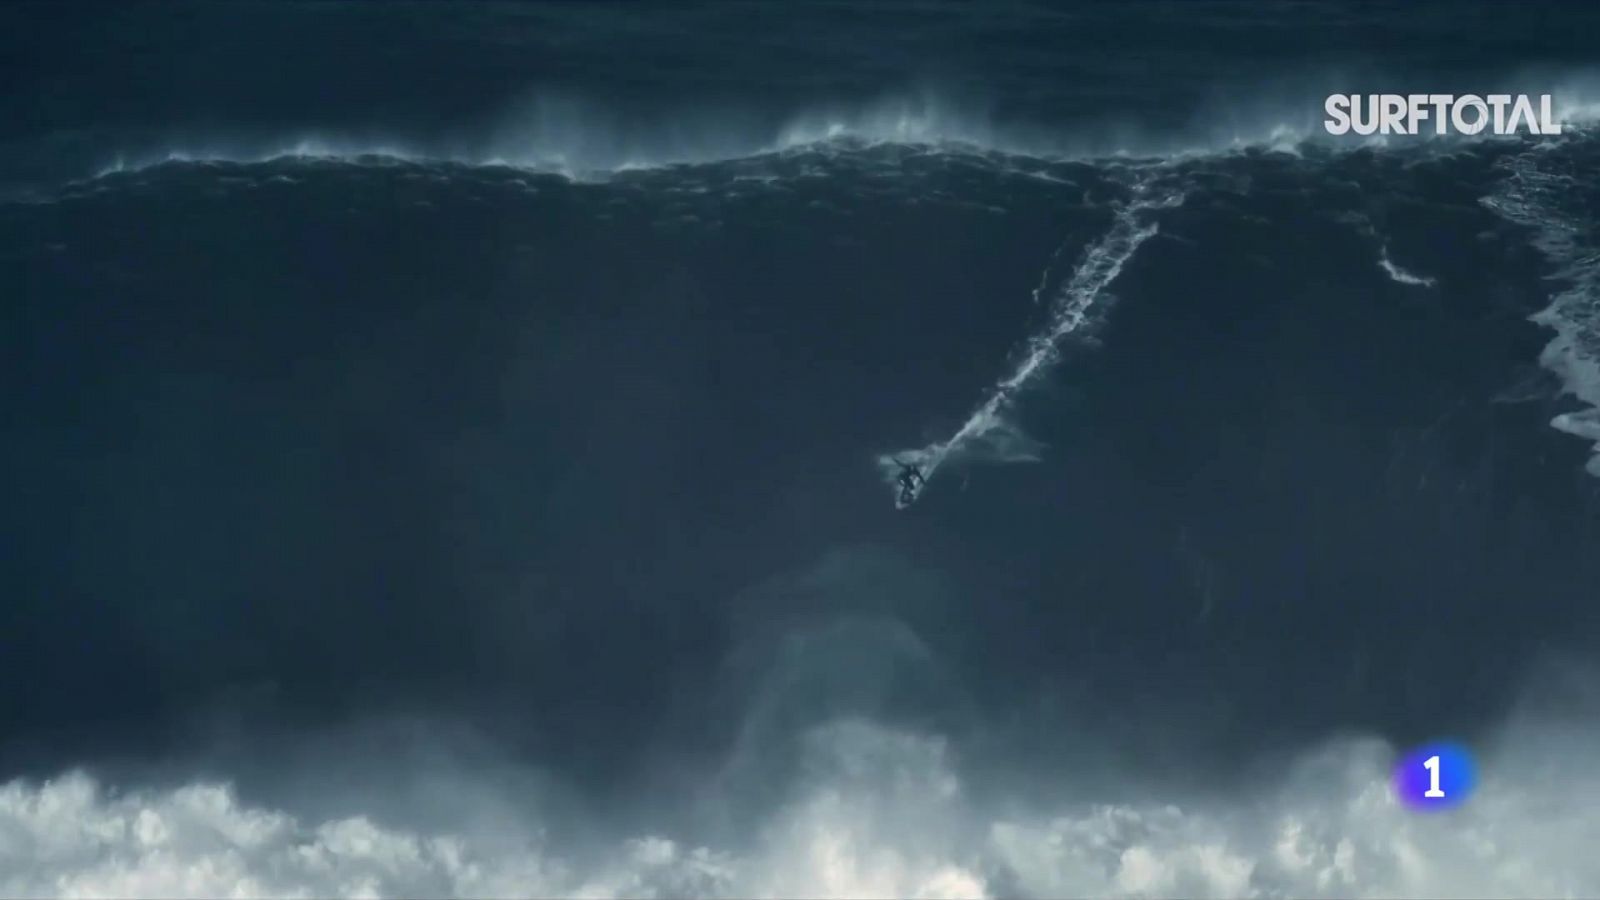 ¿La mayor ola jamás surfeada?- RTVE.es